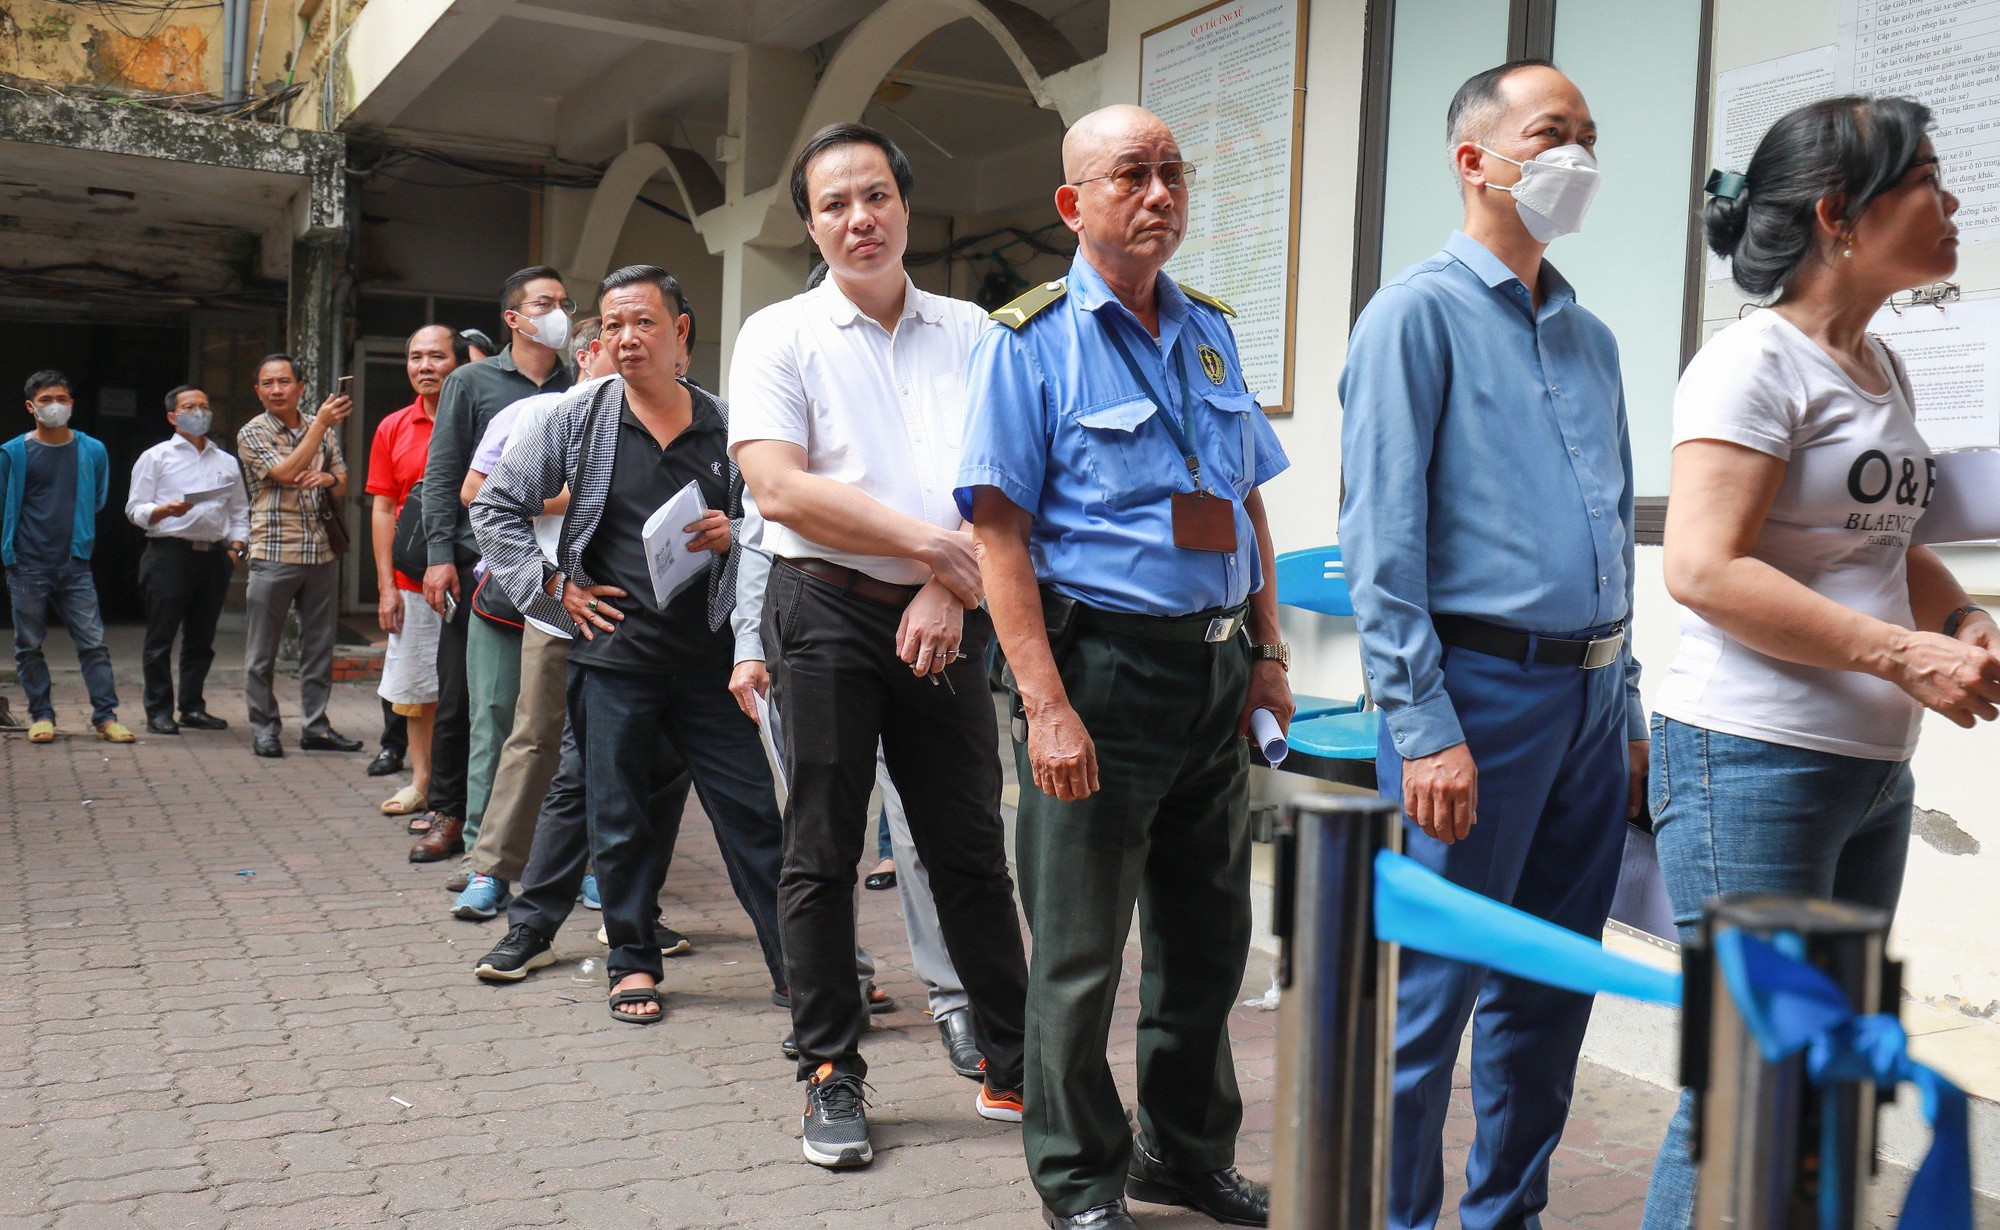 Người dân xếp hàng đổi giấy phép lái xe ở Hà Nội - Ảnh 2.